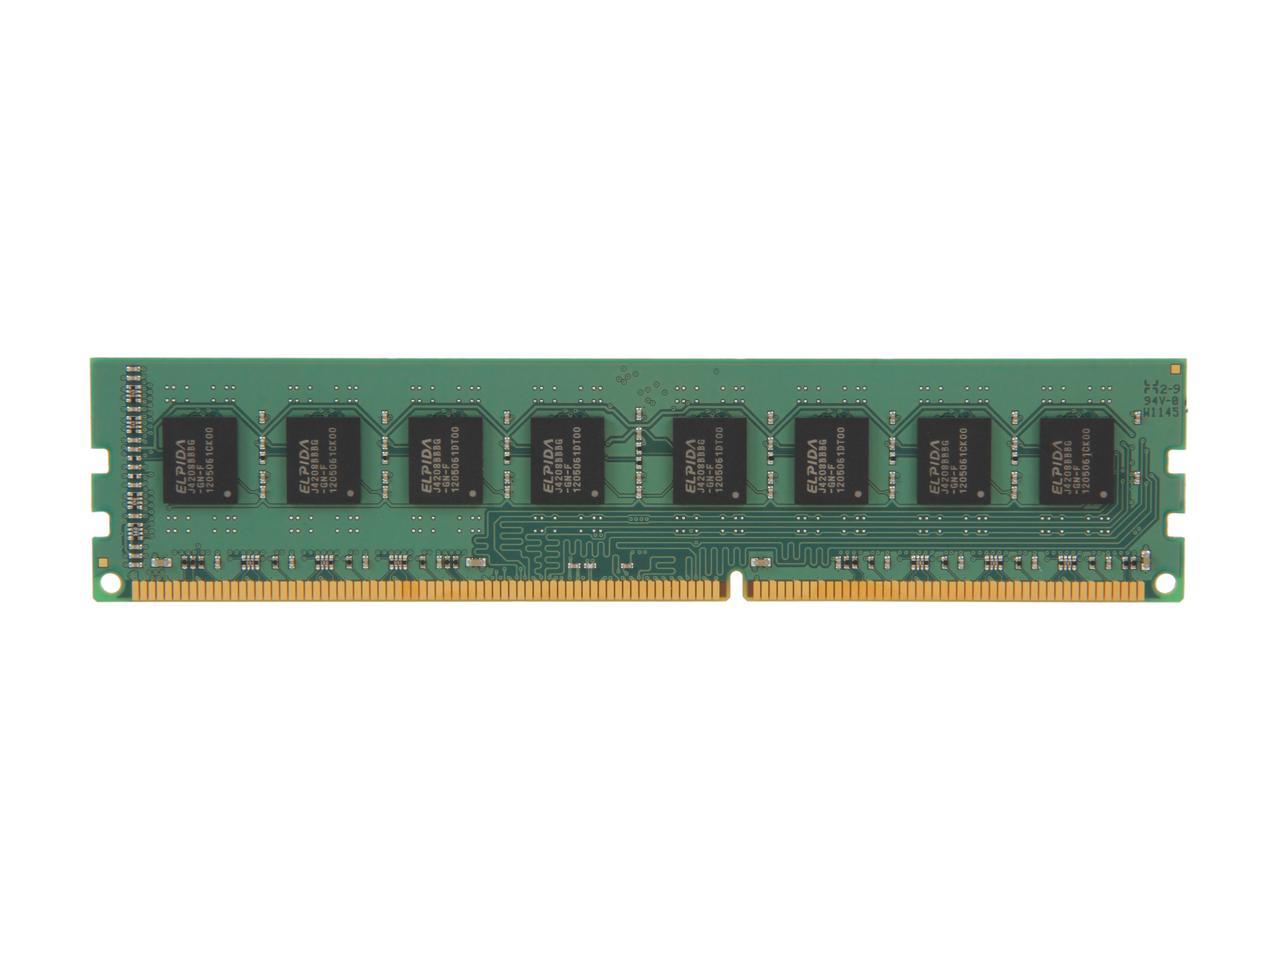 Kingston 8GB 240-Pin DDR3 SDRAM DDR3 1333 Desktop Memory Model KVR1333D3N9/8G